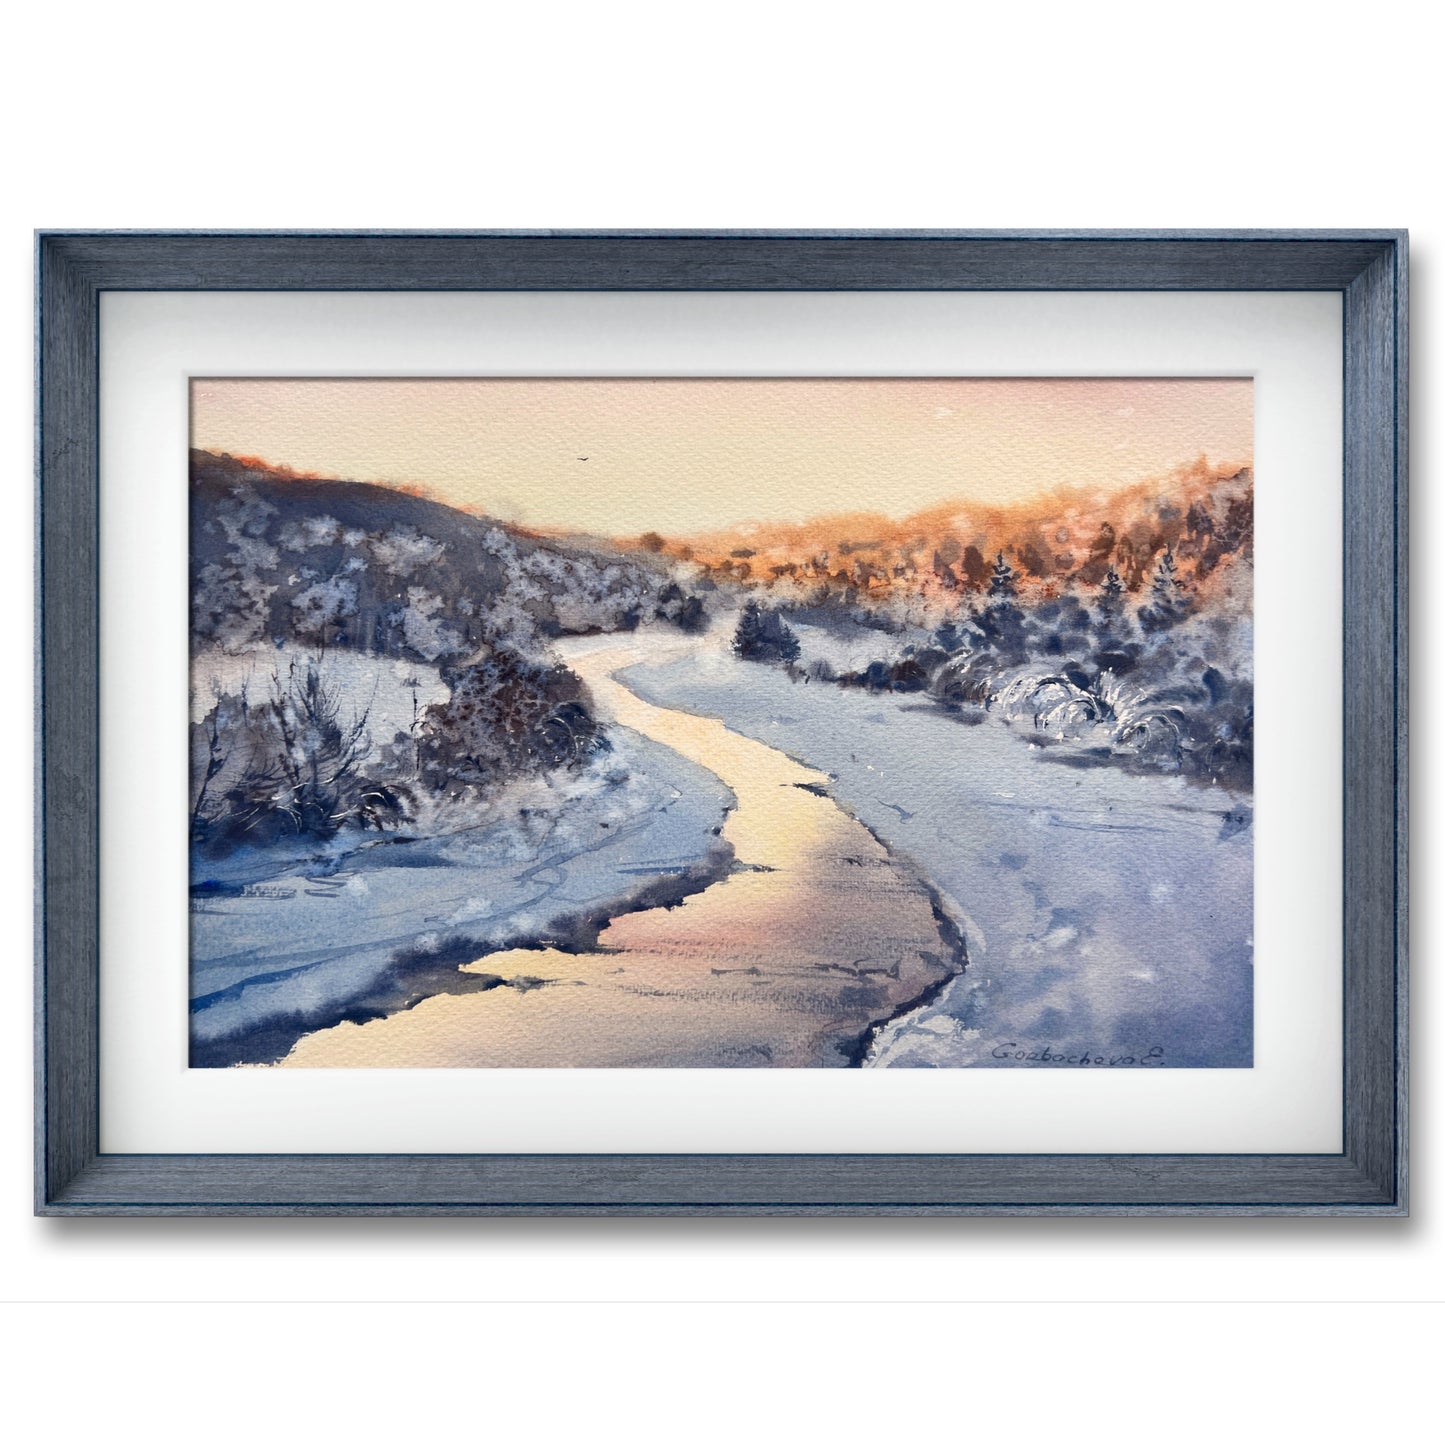 Snowy Field Painting Original, Watercolor Winter Landscape, Snowy Trees Wall Decor, Frozen River Art, Frosty Morning